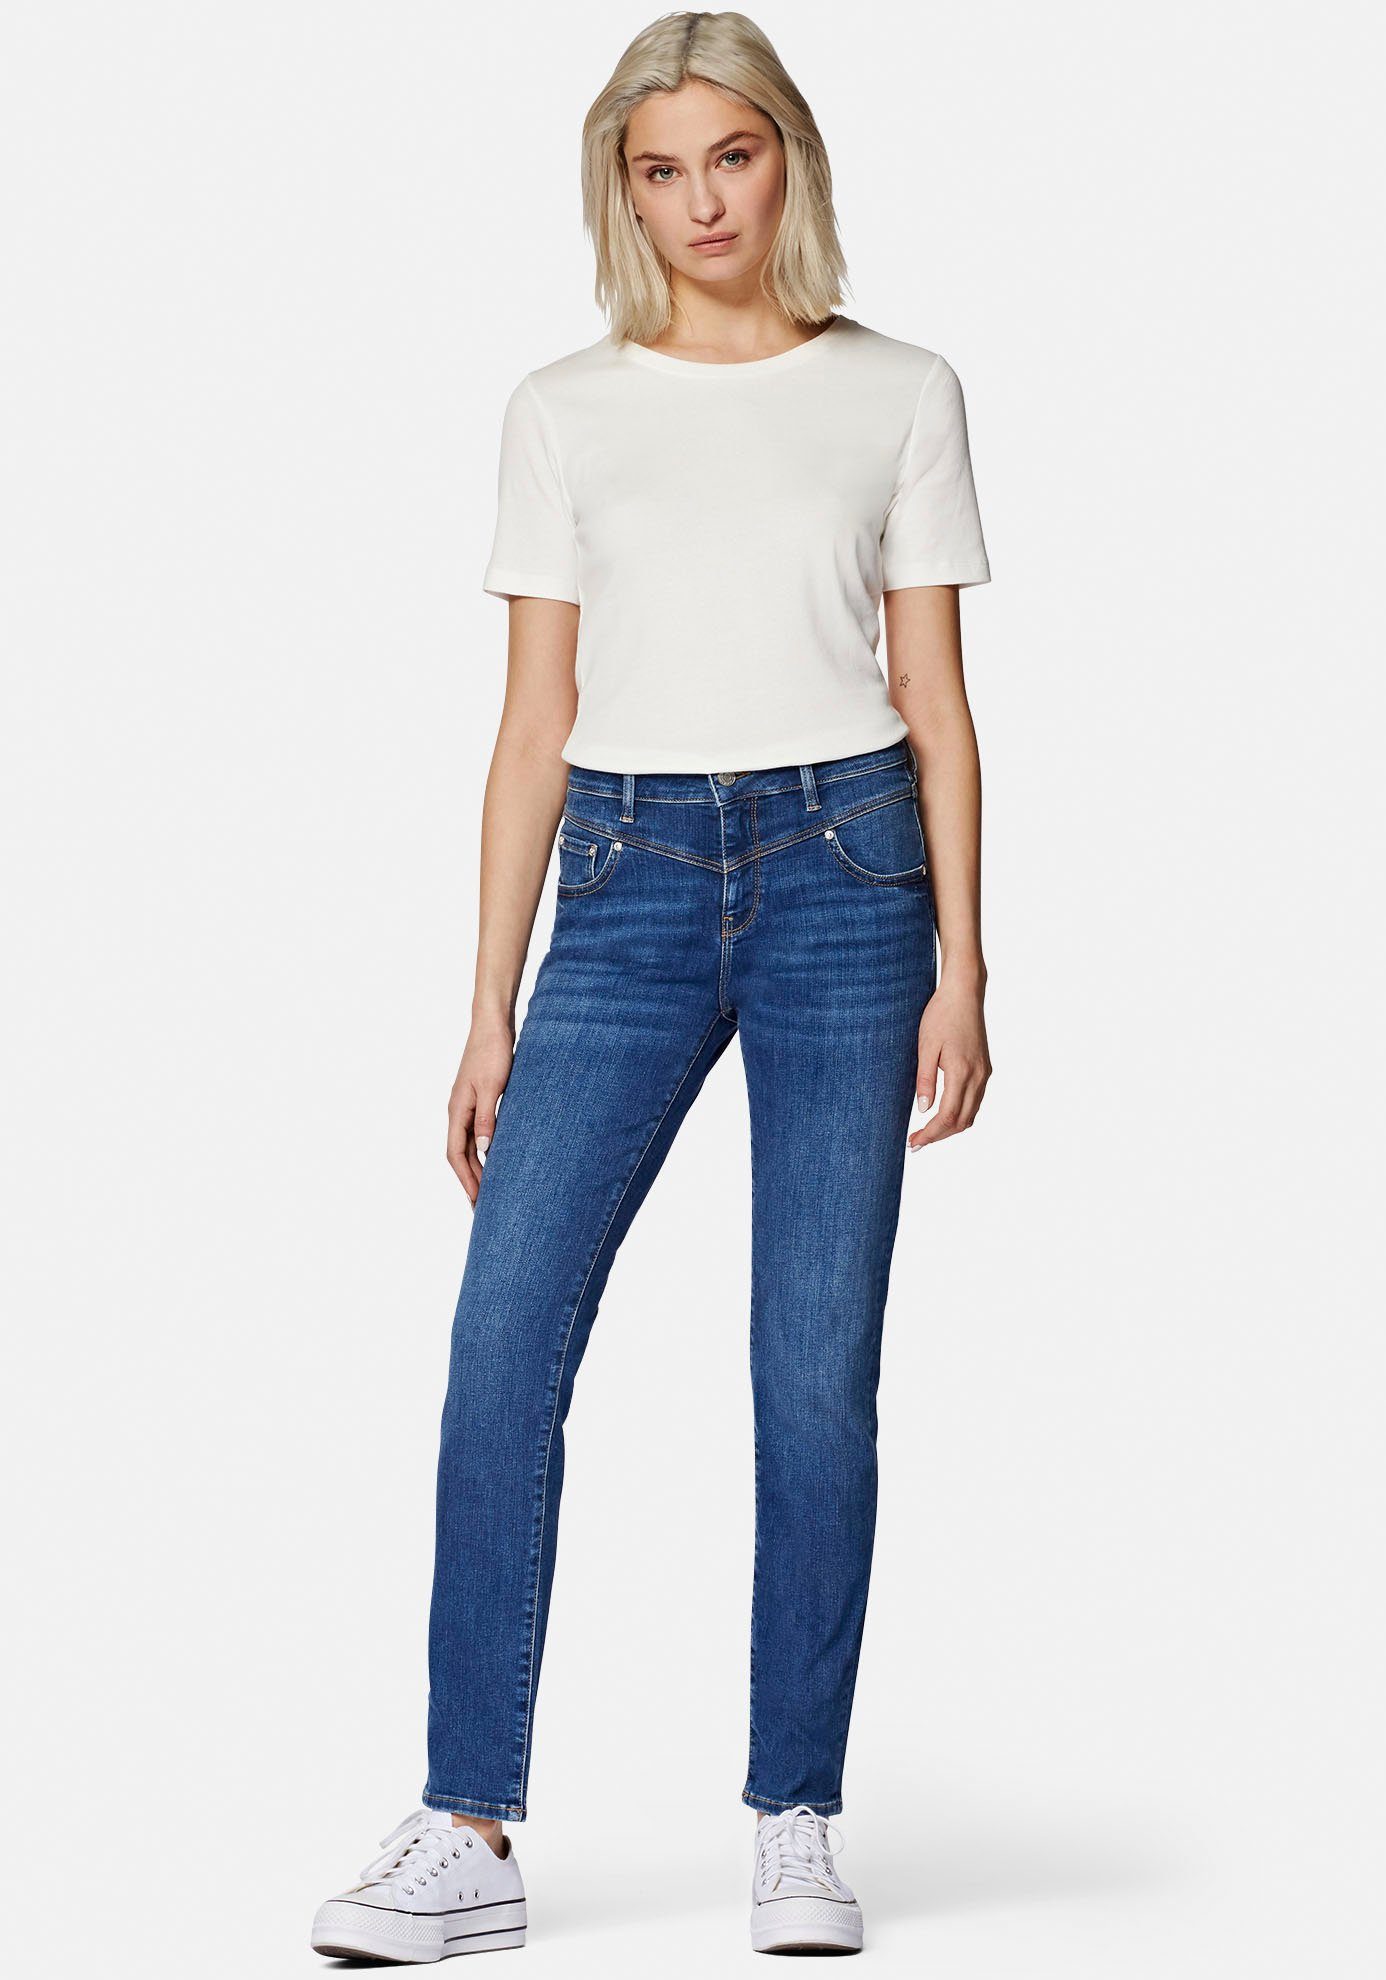 Mavi Slim-fit-Jeans trageangenehmer blue Verarbeitung hochwertiger mid dank Stretchdenim